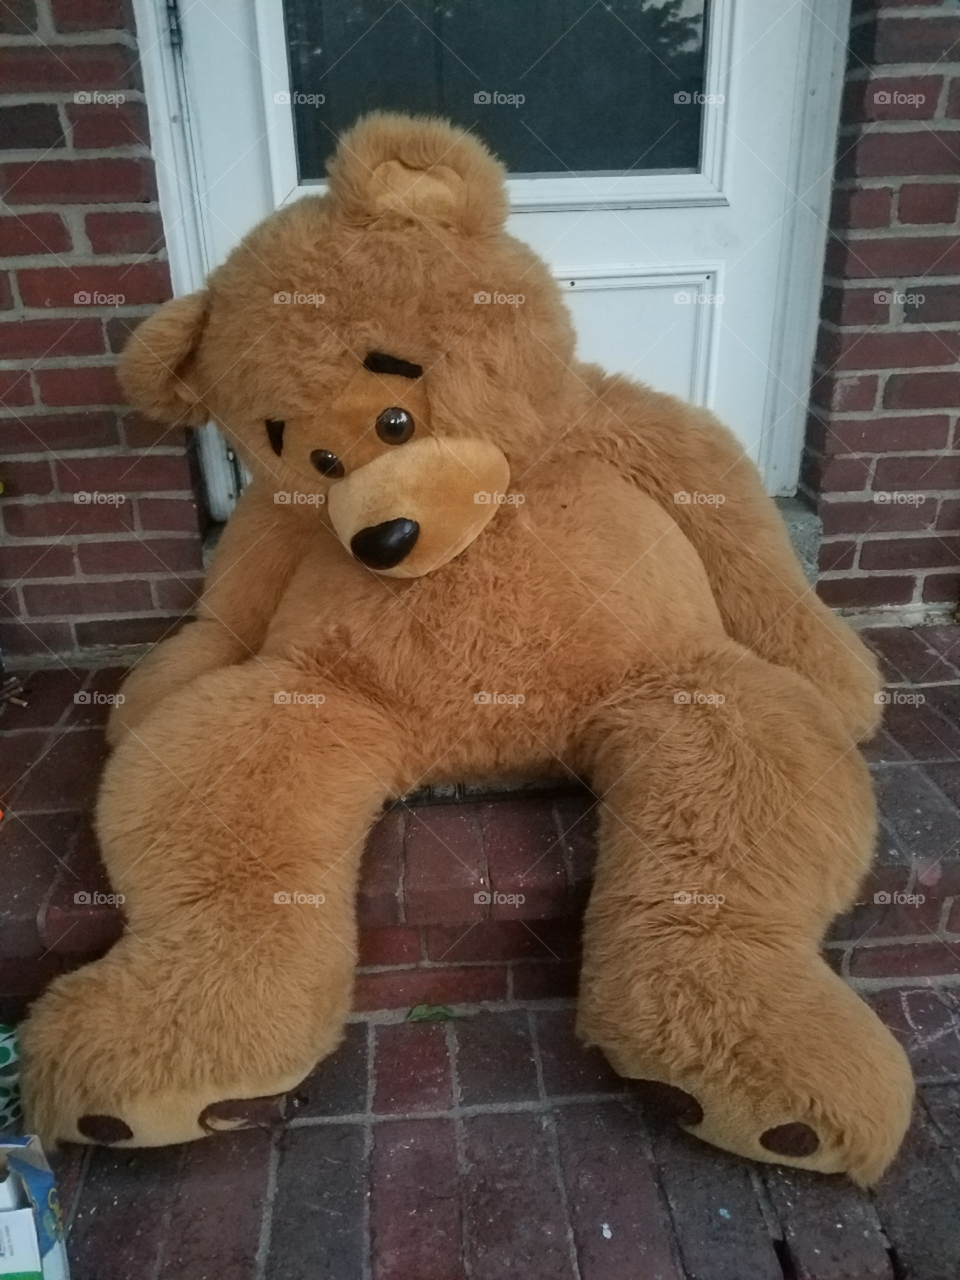 Sad Teddy